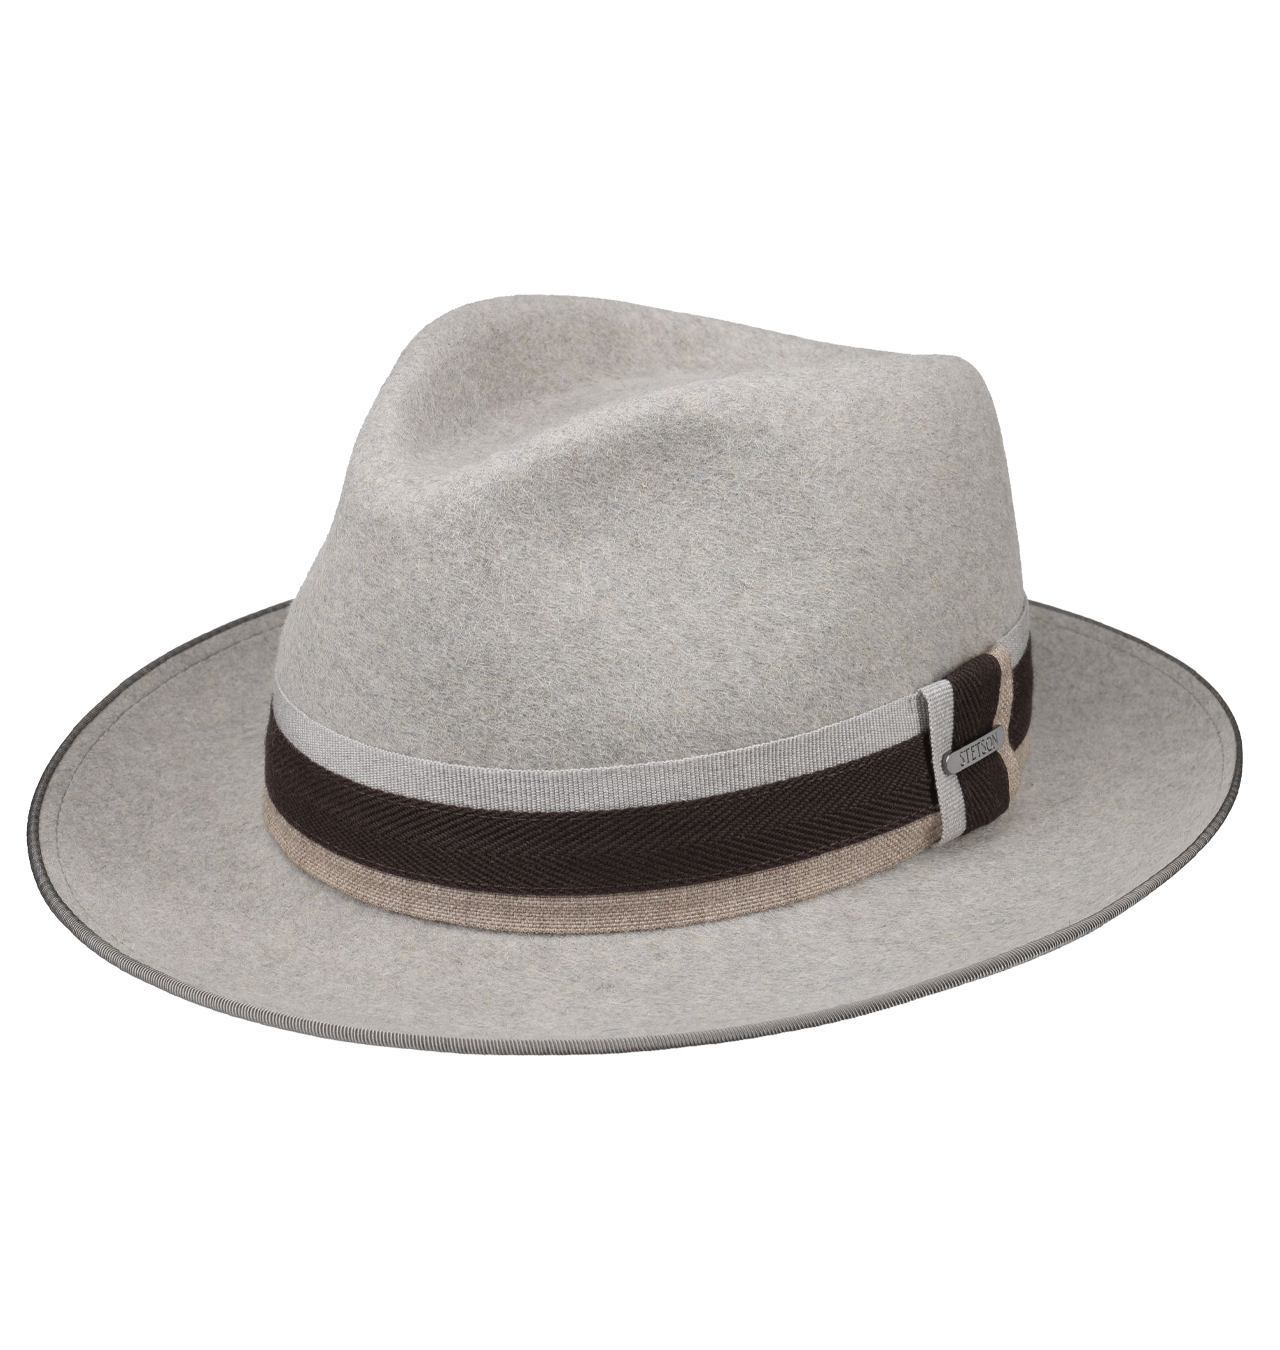 Stetson---West-Bend-Fedora-Fur-Felt-Hat---Grey-mottled1